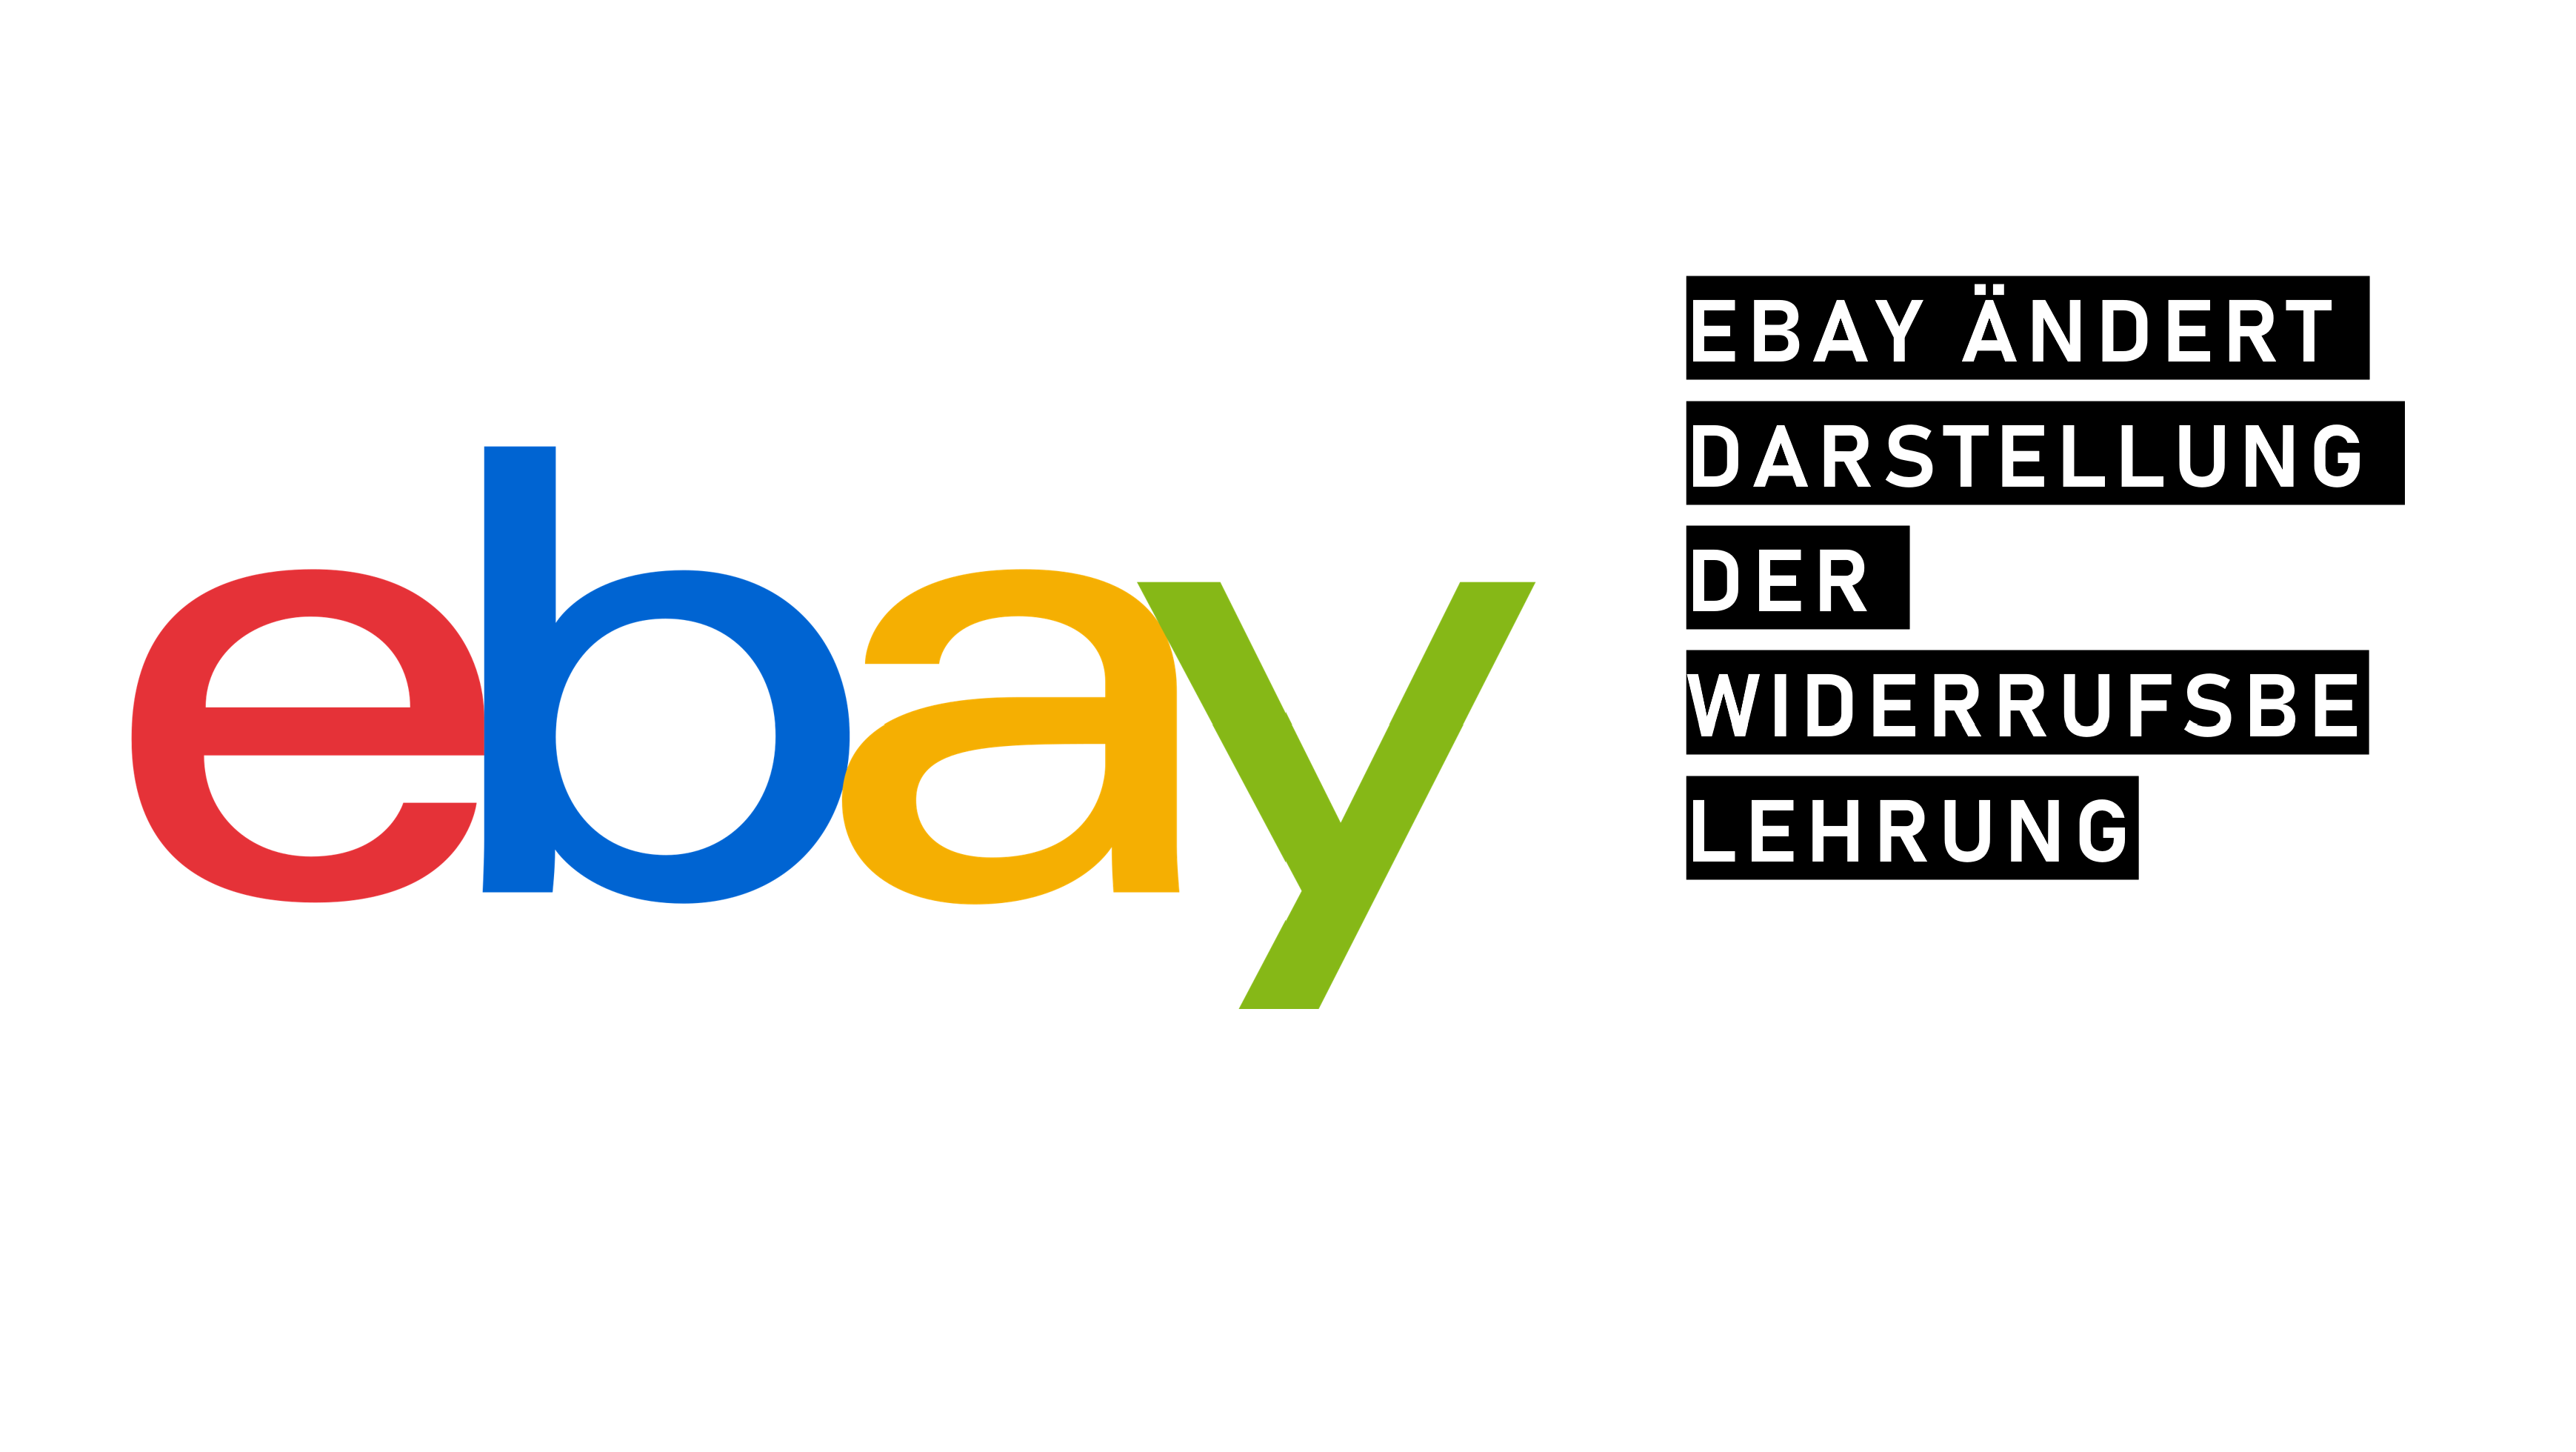 eBay verändert Darstellung der Widerrufsbelehrung